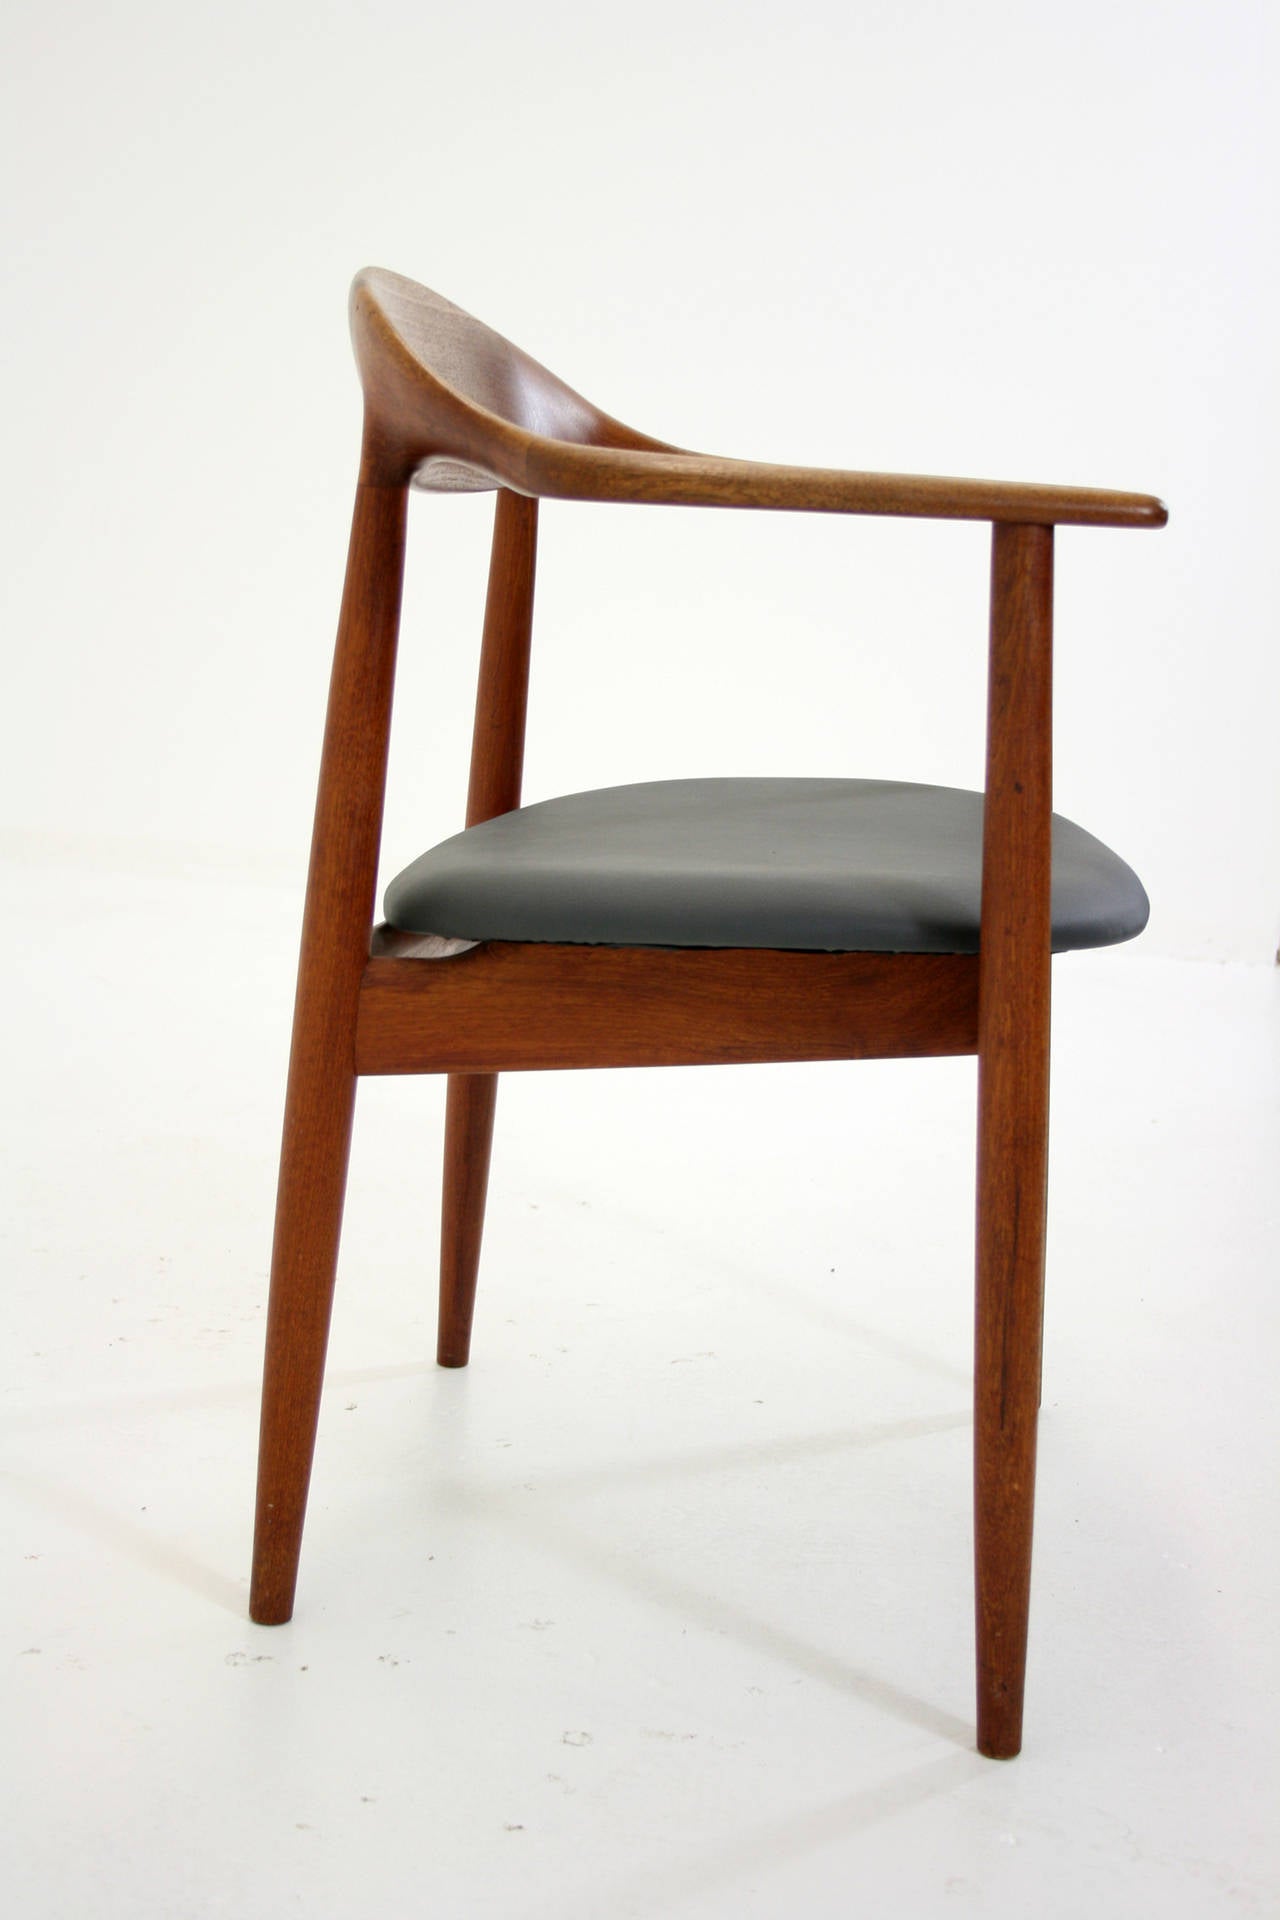 Scandinavian Modern Danish Mid Century Modern Teak Arm Chair by Kurt Ostervig for Brande